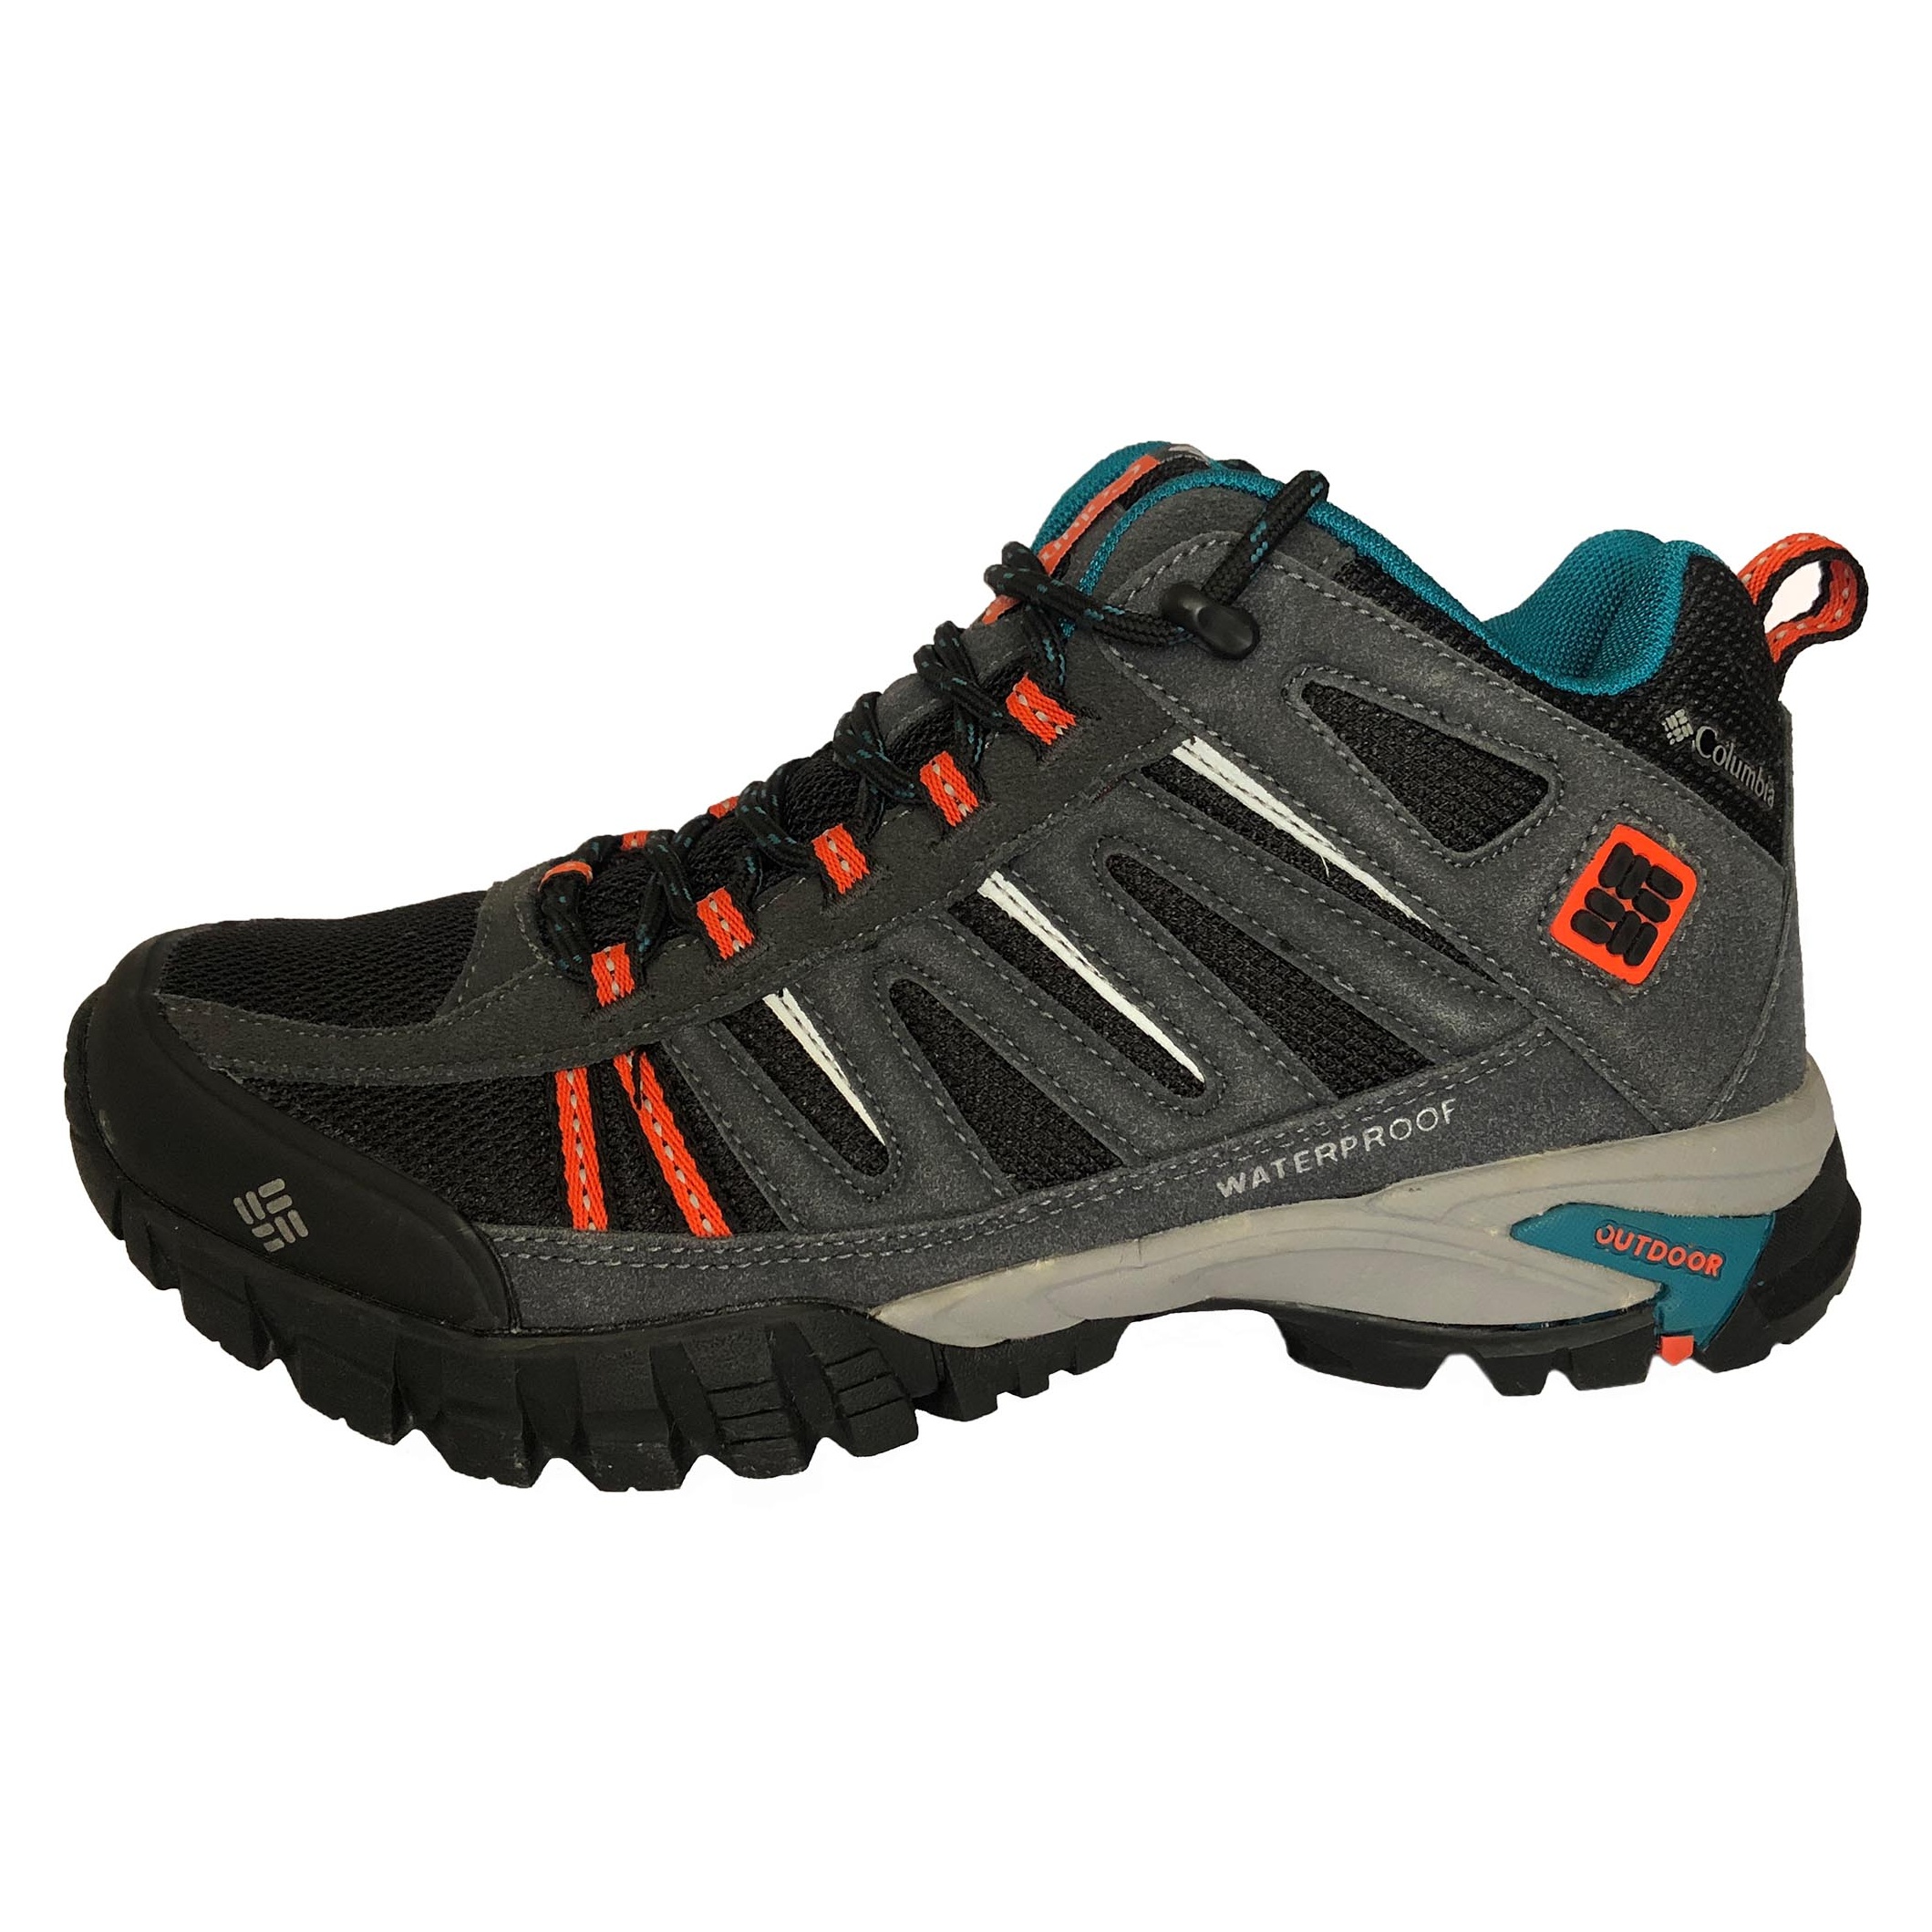 کفش کوهنوردی مردانه کلمبیا کد H9853